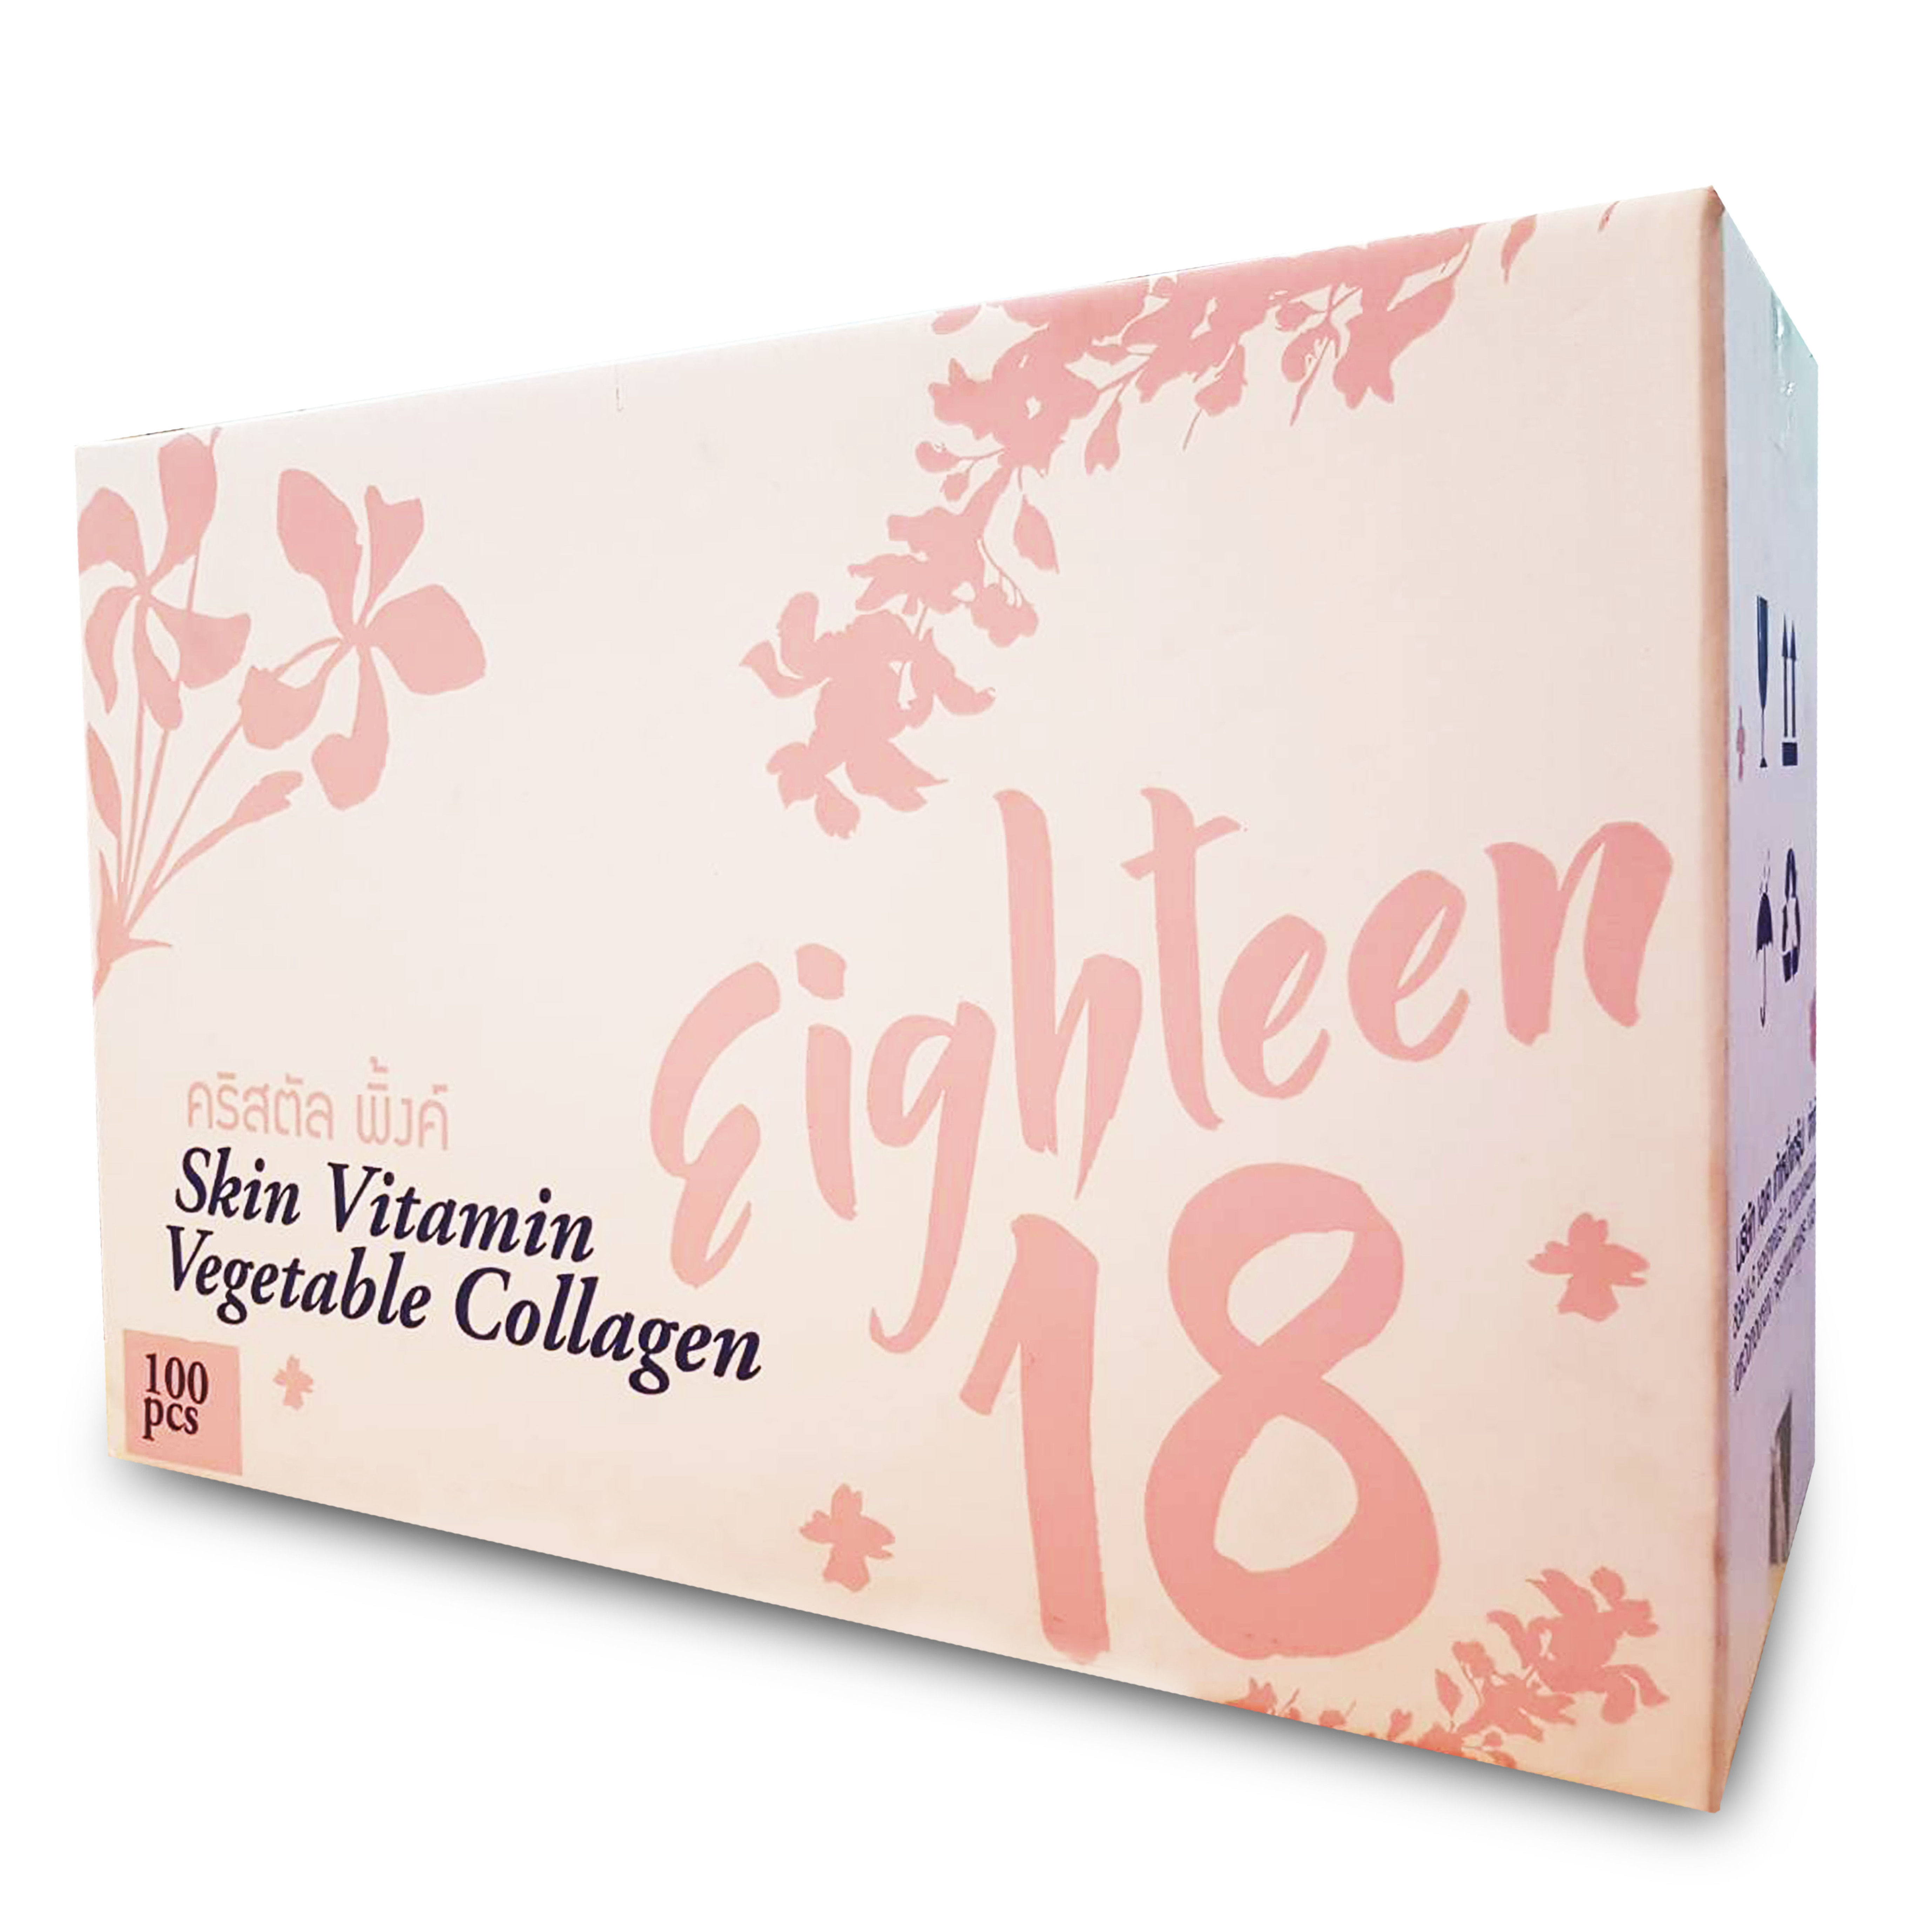 กล่องอาหารเสริม 
Brand Eighteen บรรจุ 100 ชิ้น
ขนาด 25.5x59.5x42cm.